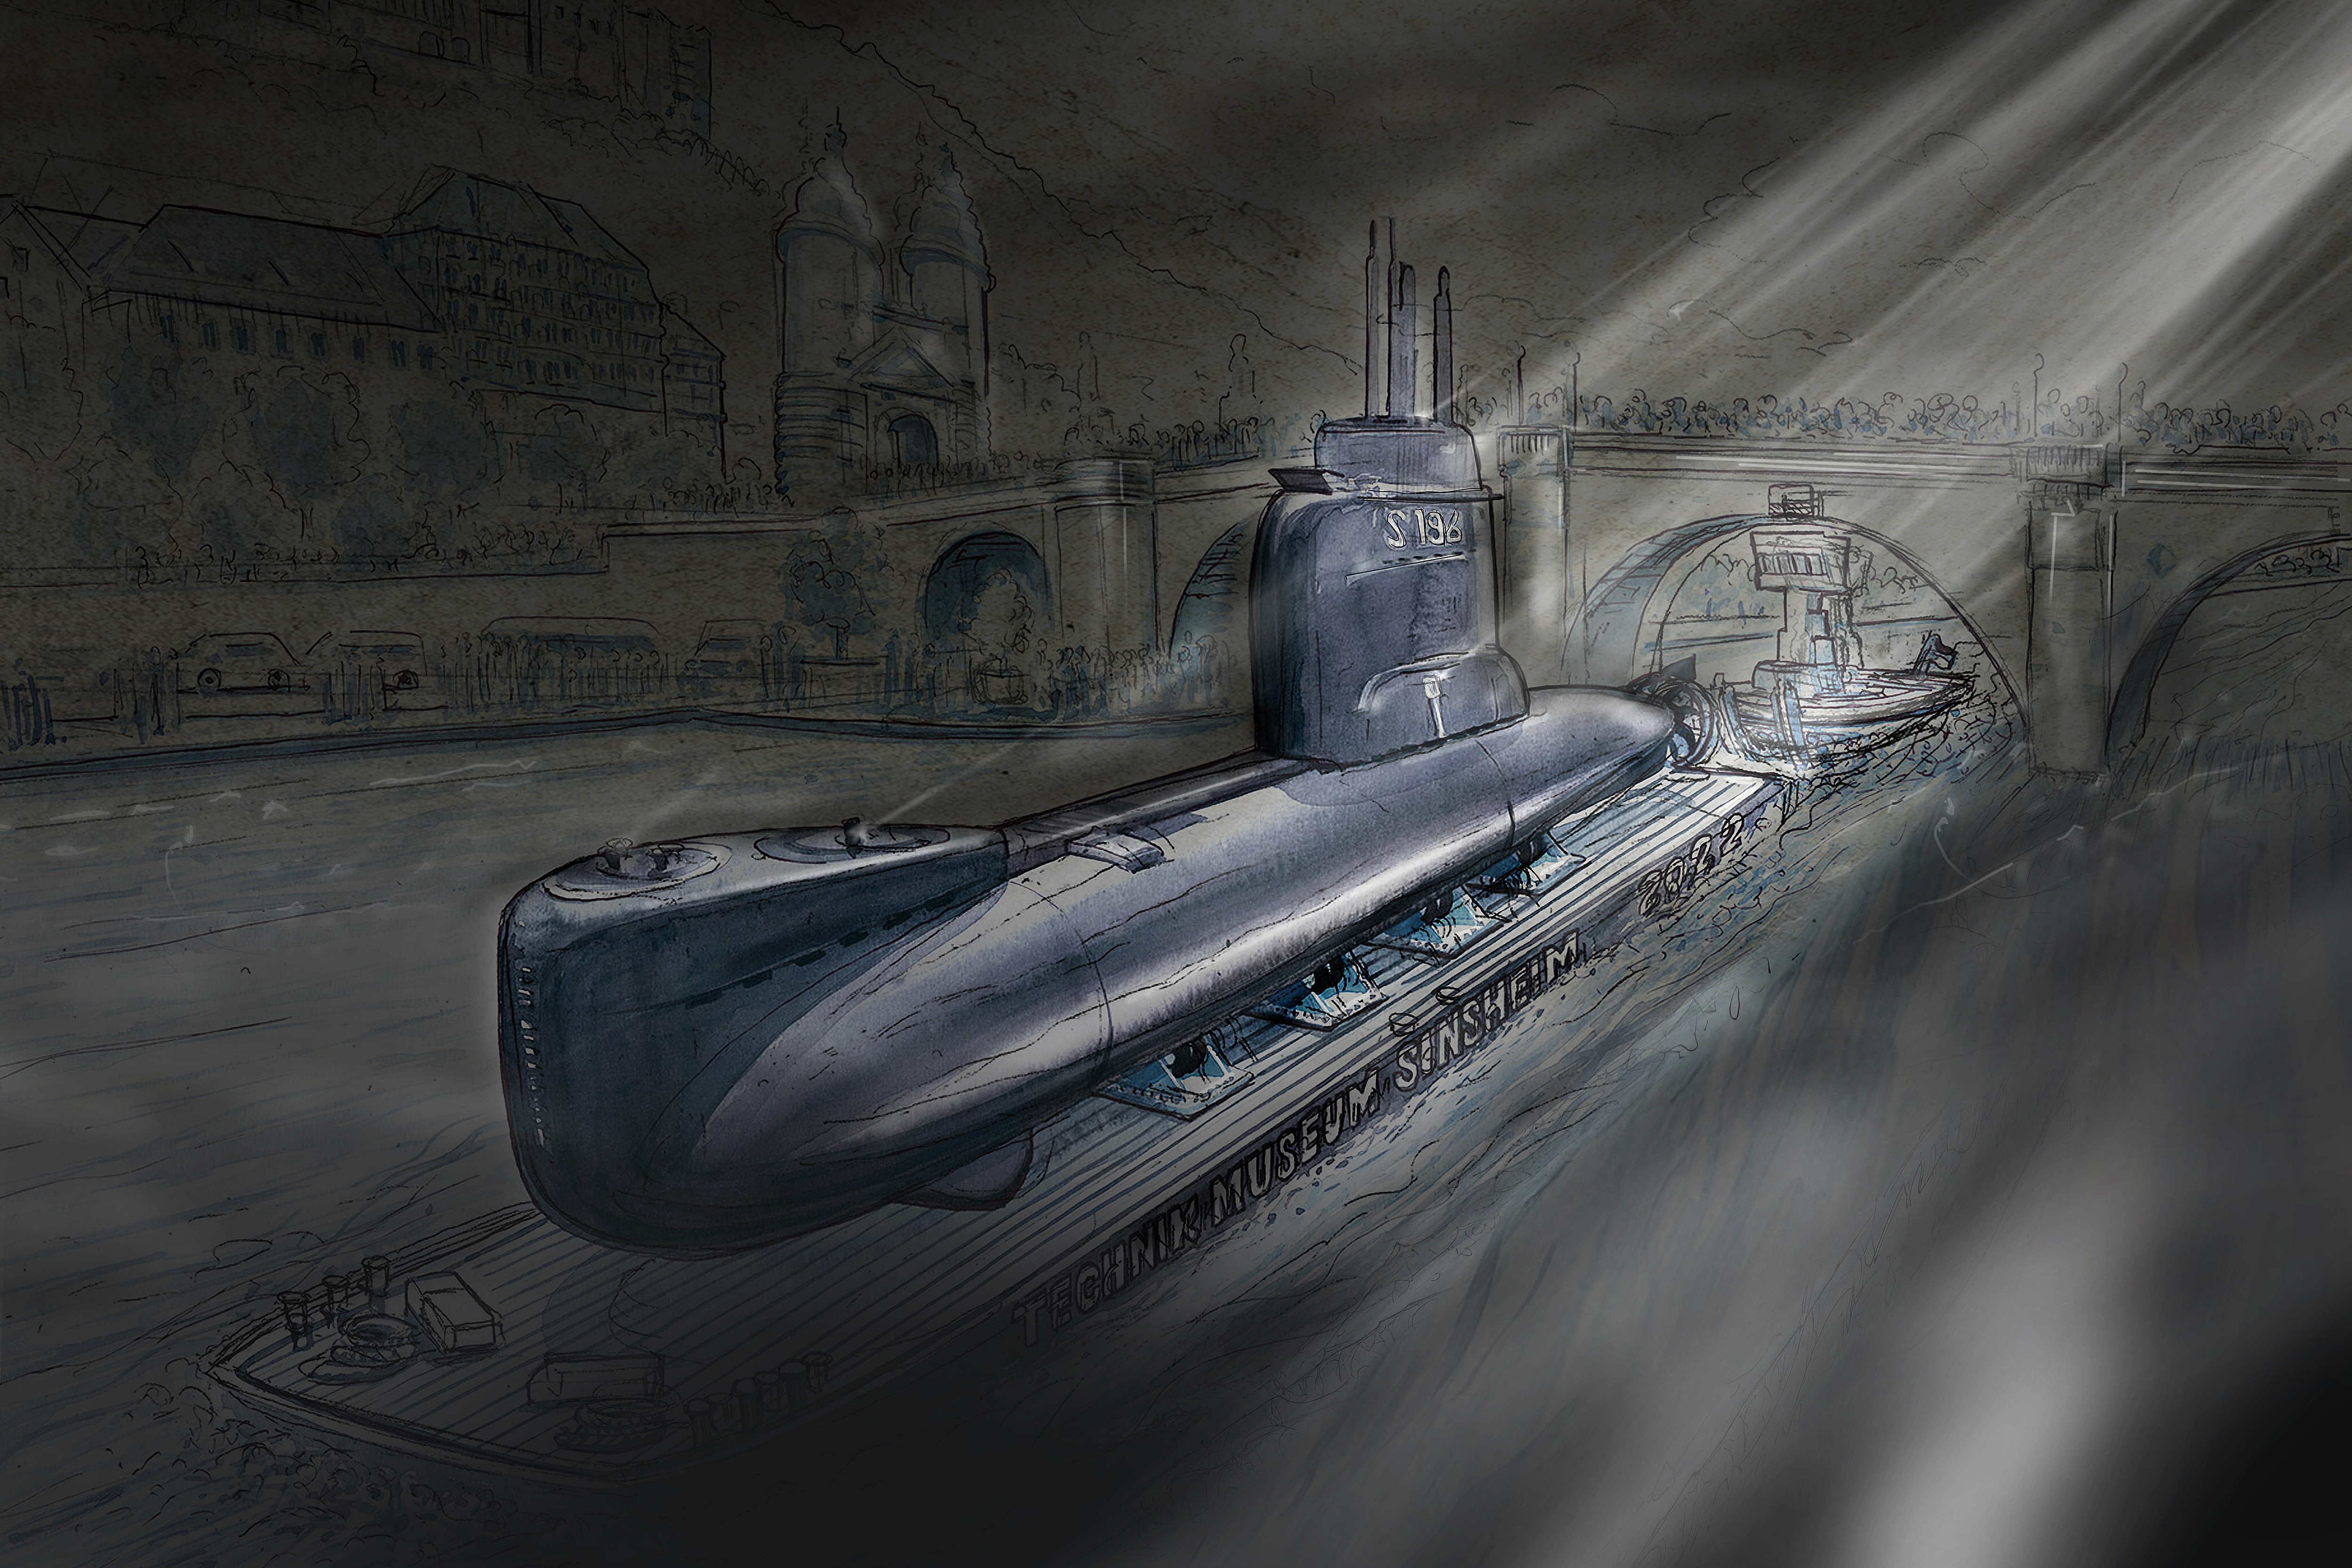 Das U17 war ein wichtiges U-Boot der Marine – jetzt kommt es ins